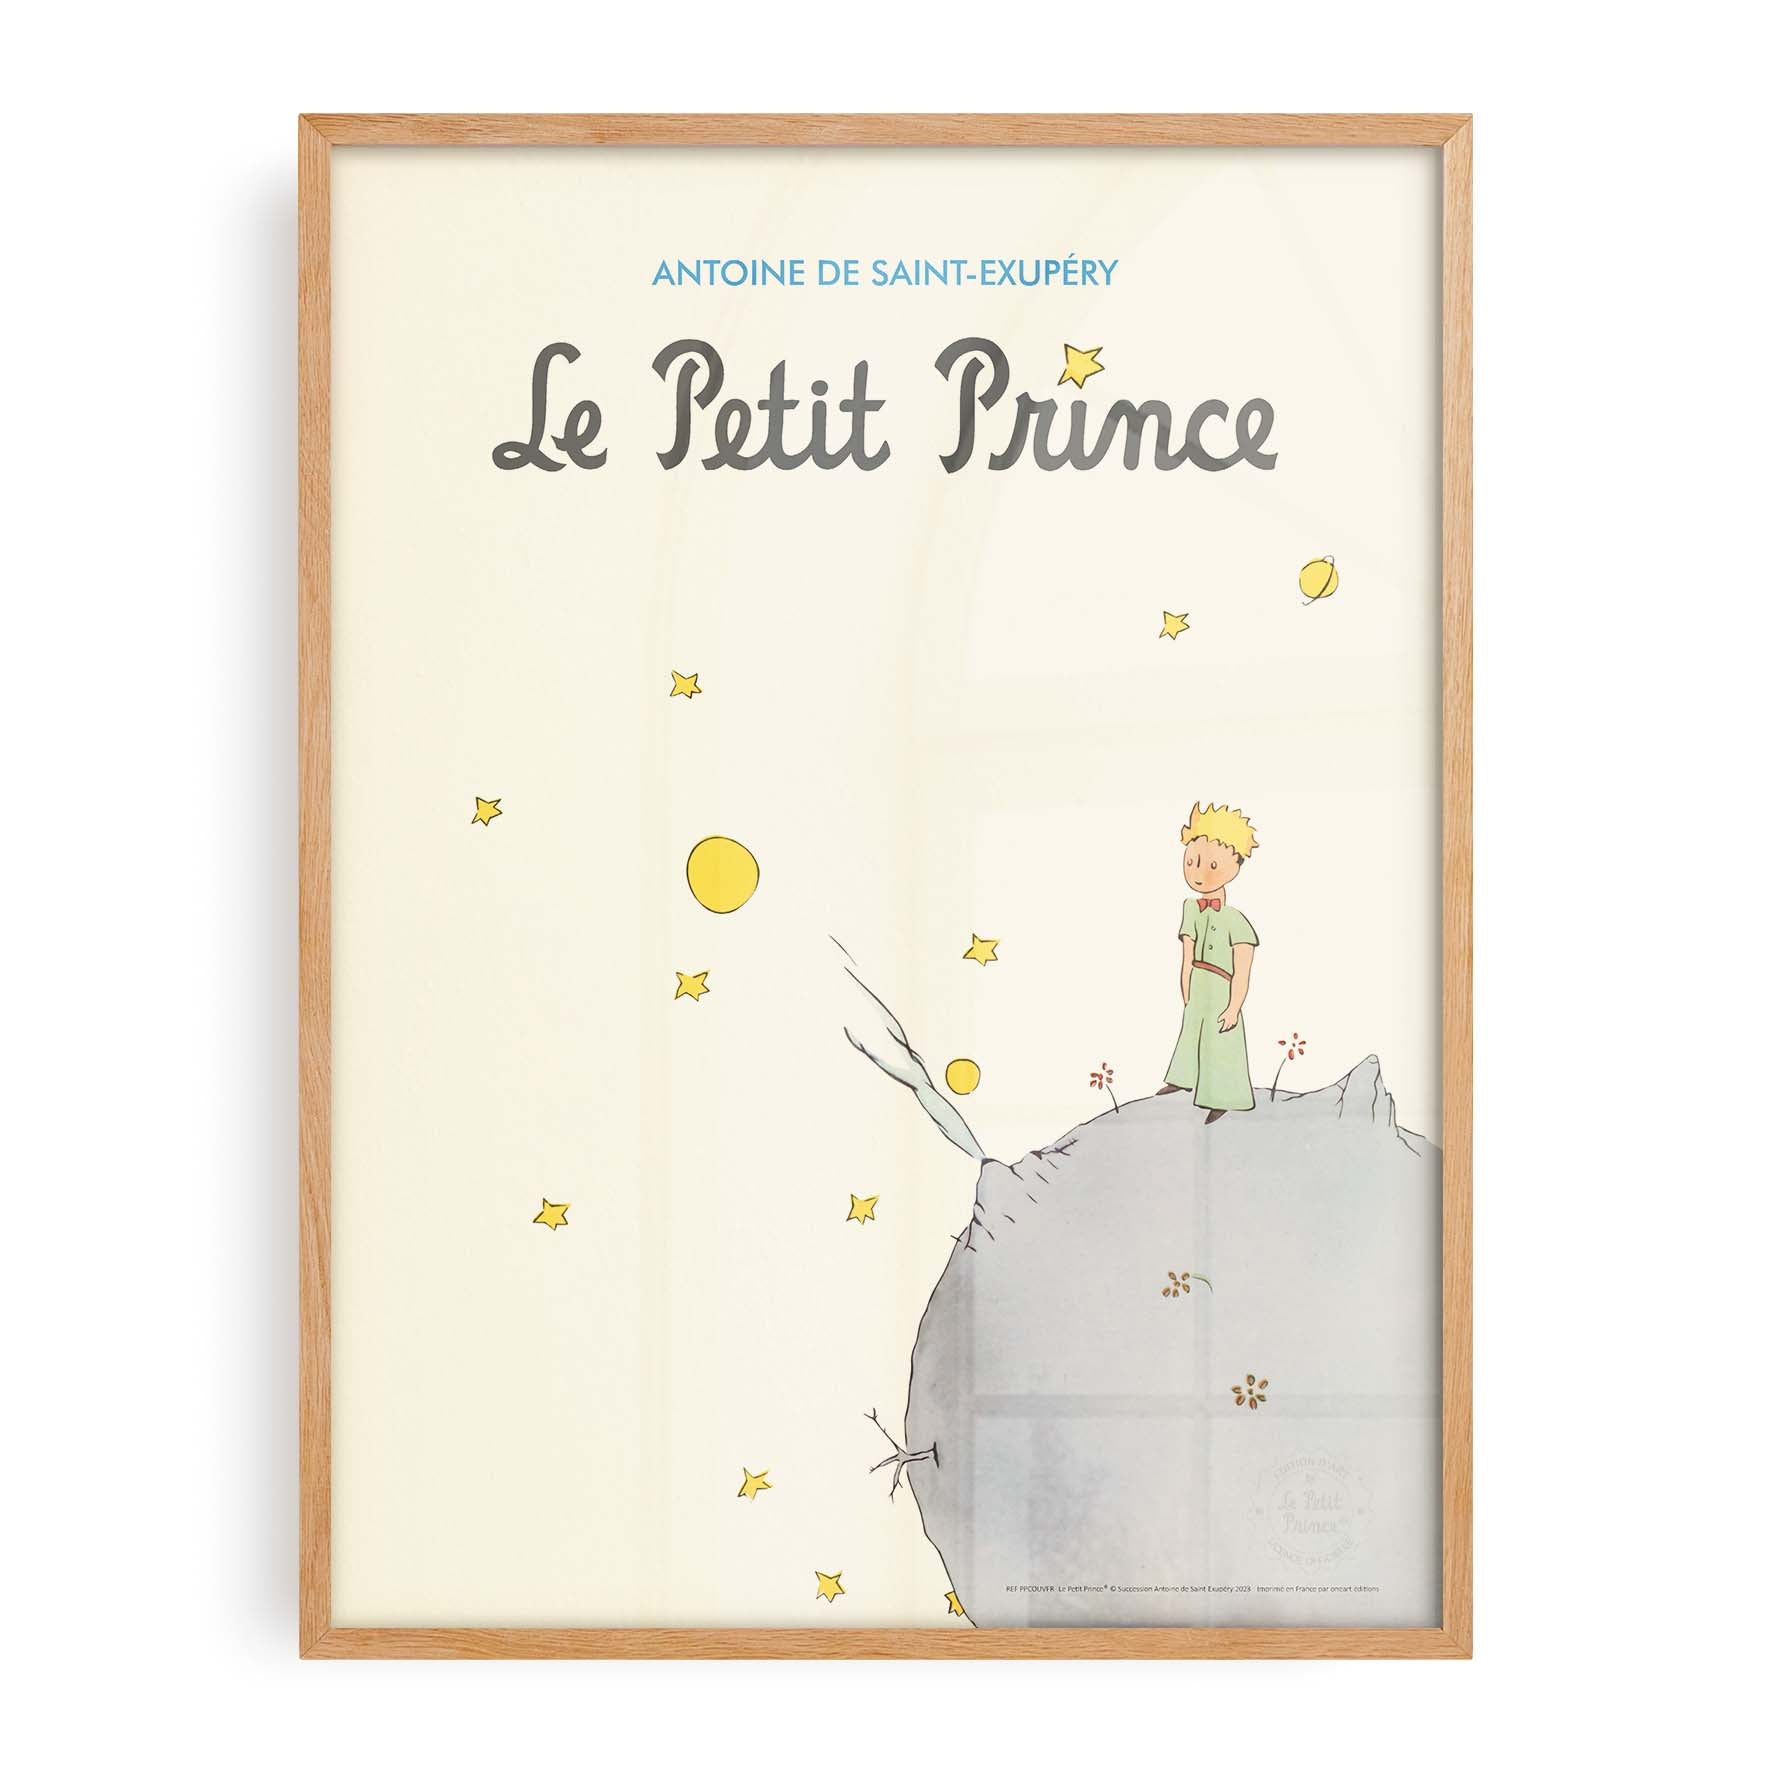 Affiche Le petit prince - Couverture français-oneart.fr